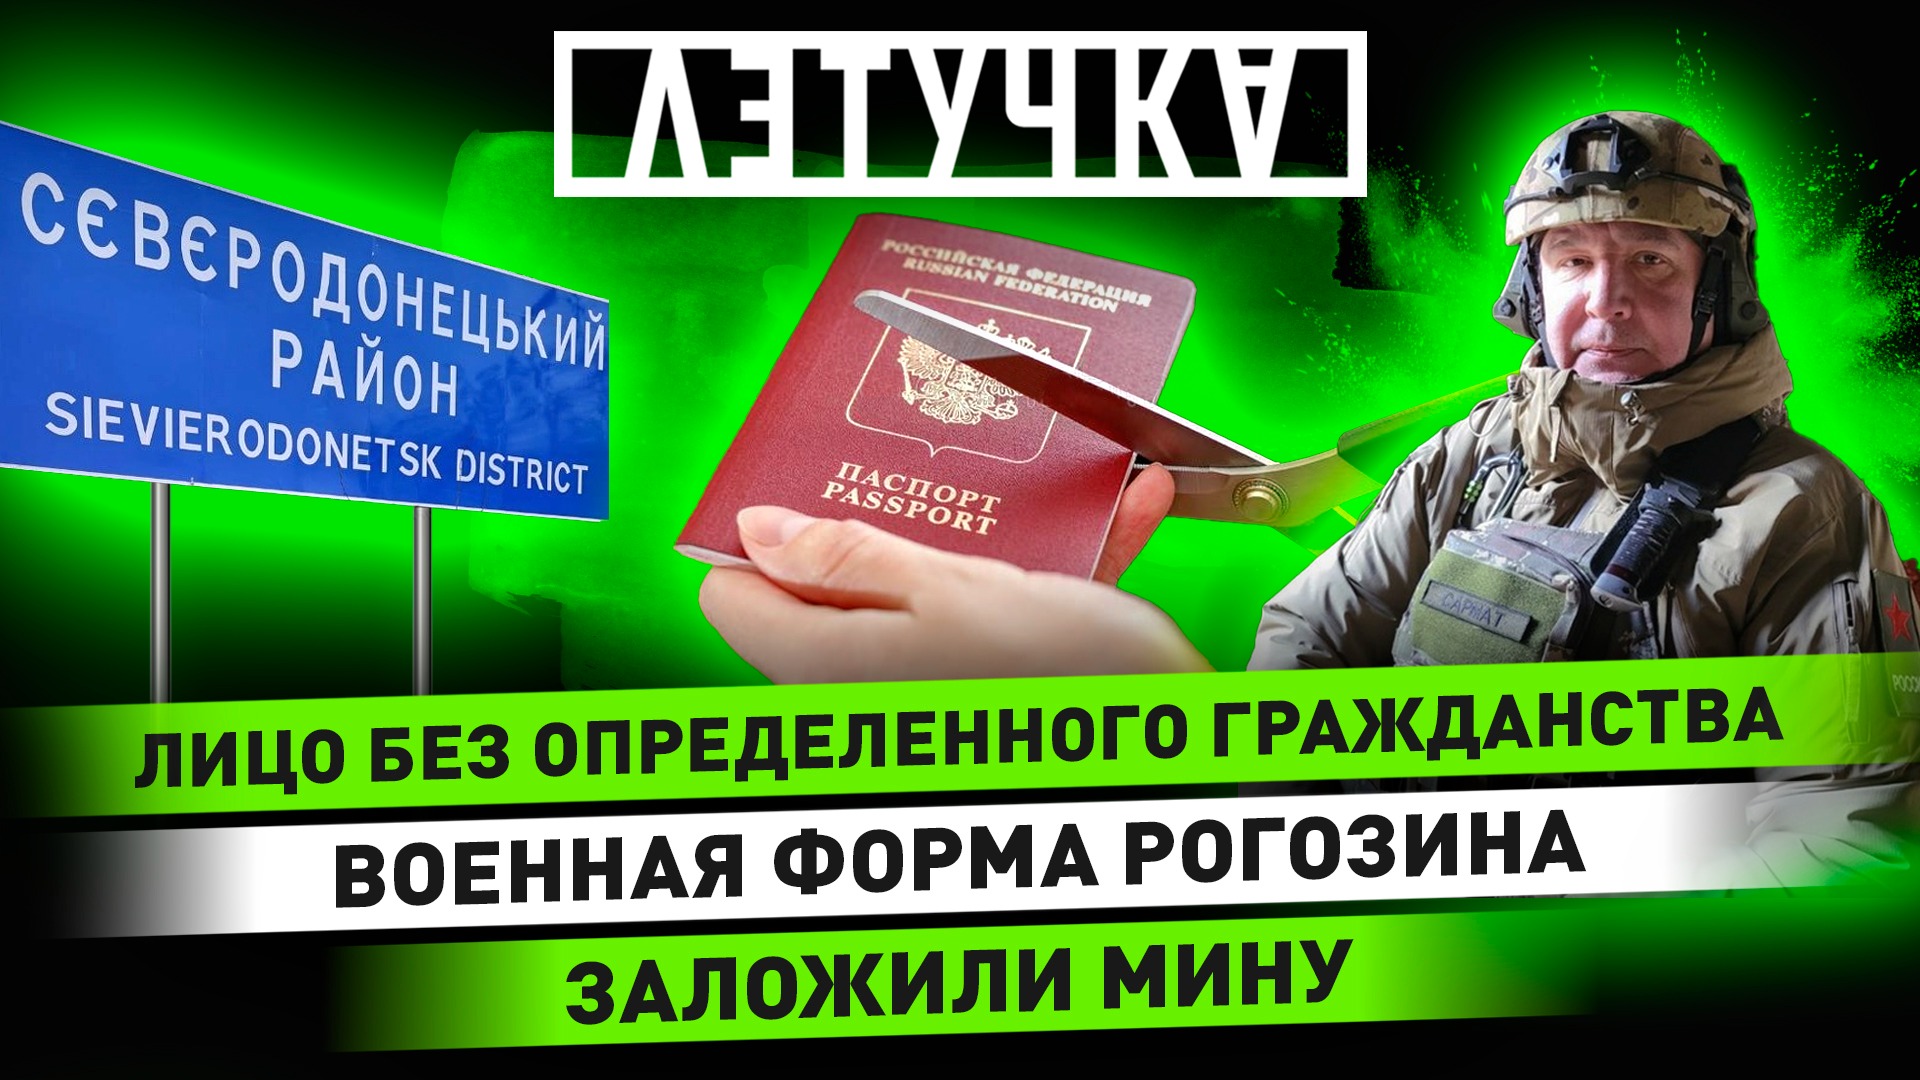 Украинские фейки. Жизнь на освобождённых территориях. Лишение гражданства. 1 декабря | «Летучка»